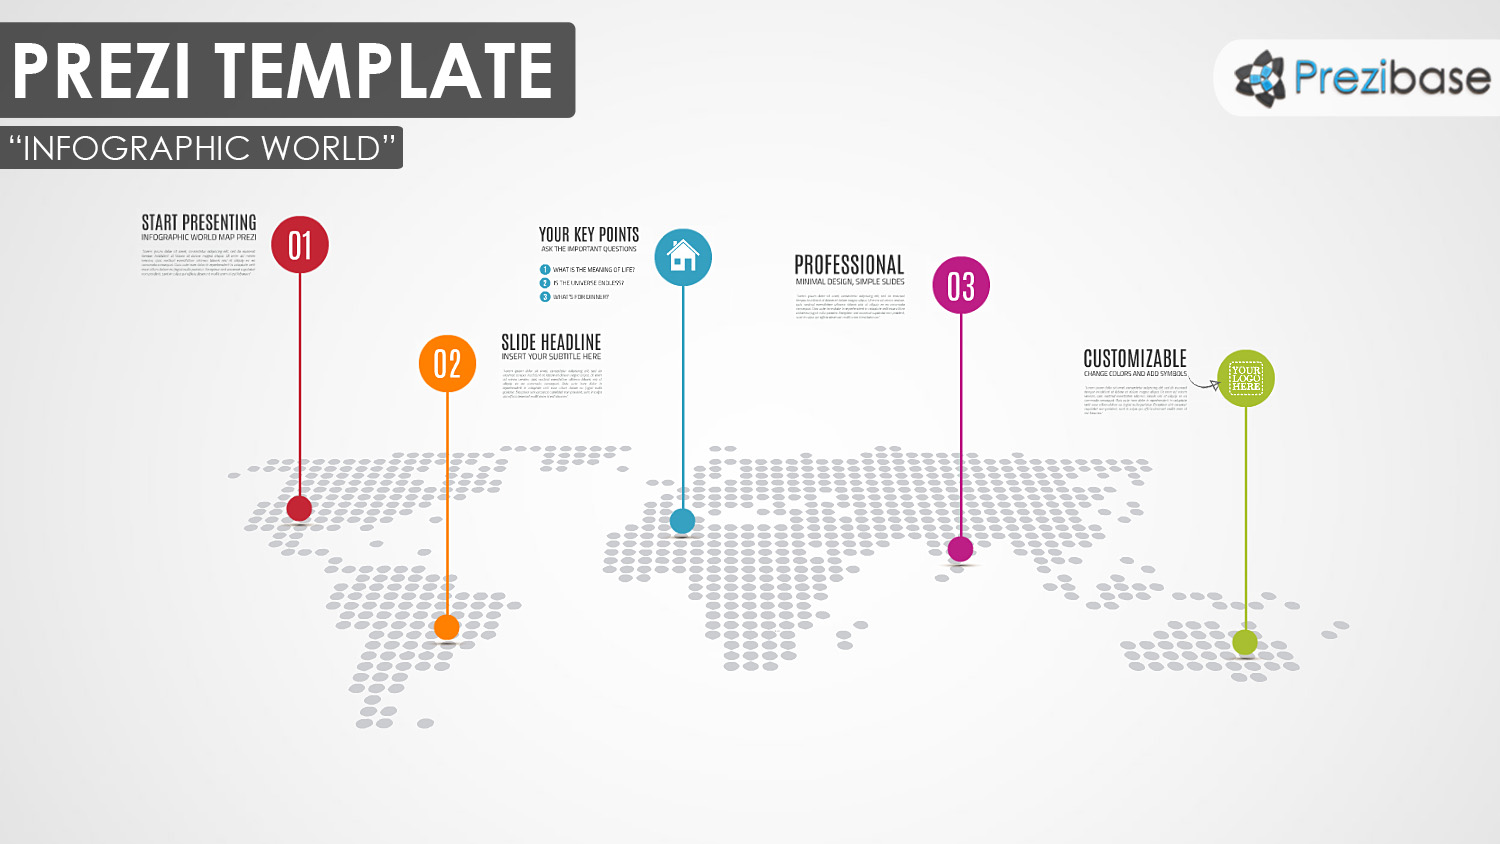 Infographic World – Prezi Presentation Template | Creatoz collection